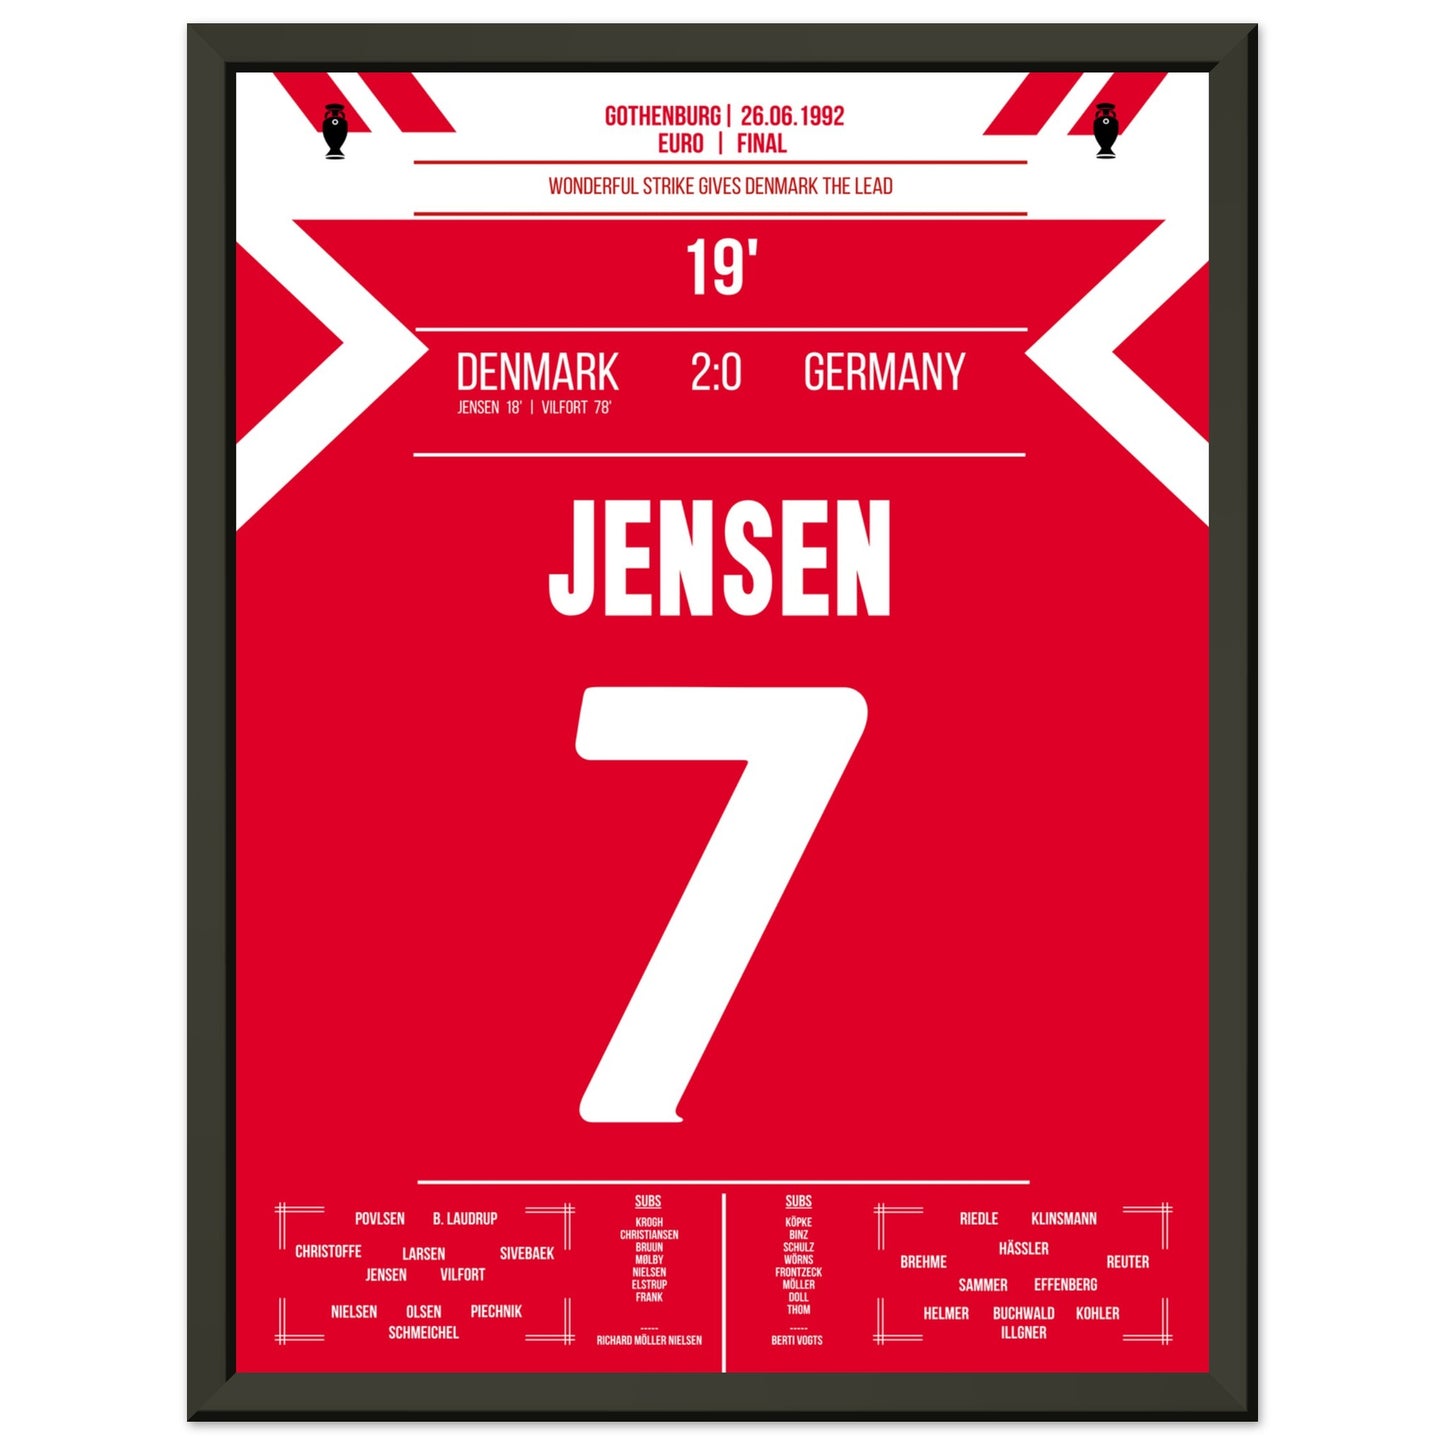 Jensen's Tor zur Führung für Dänemark im Finale der Euro 1992